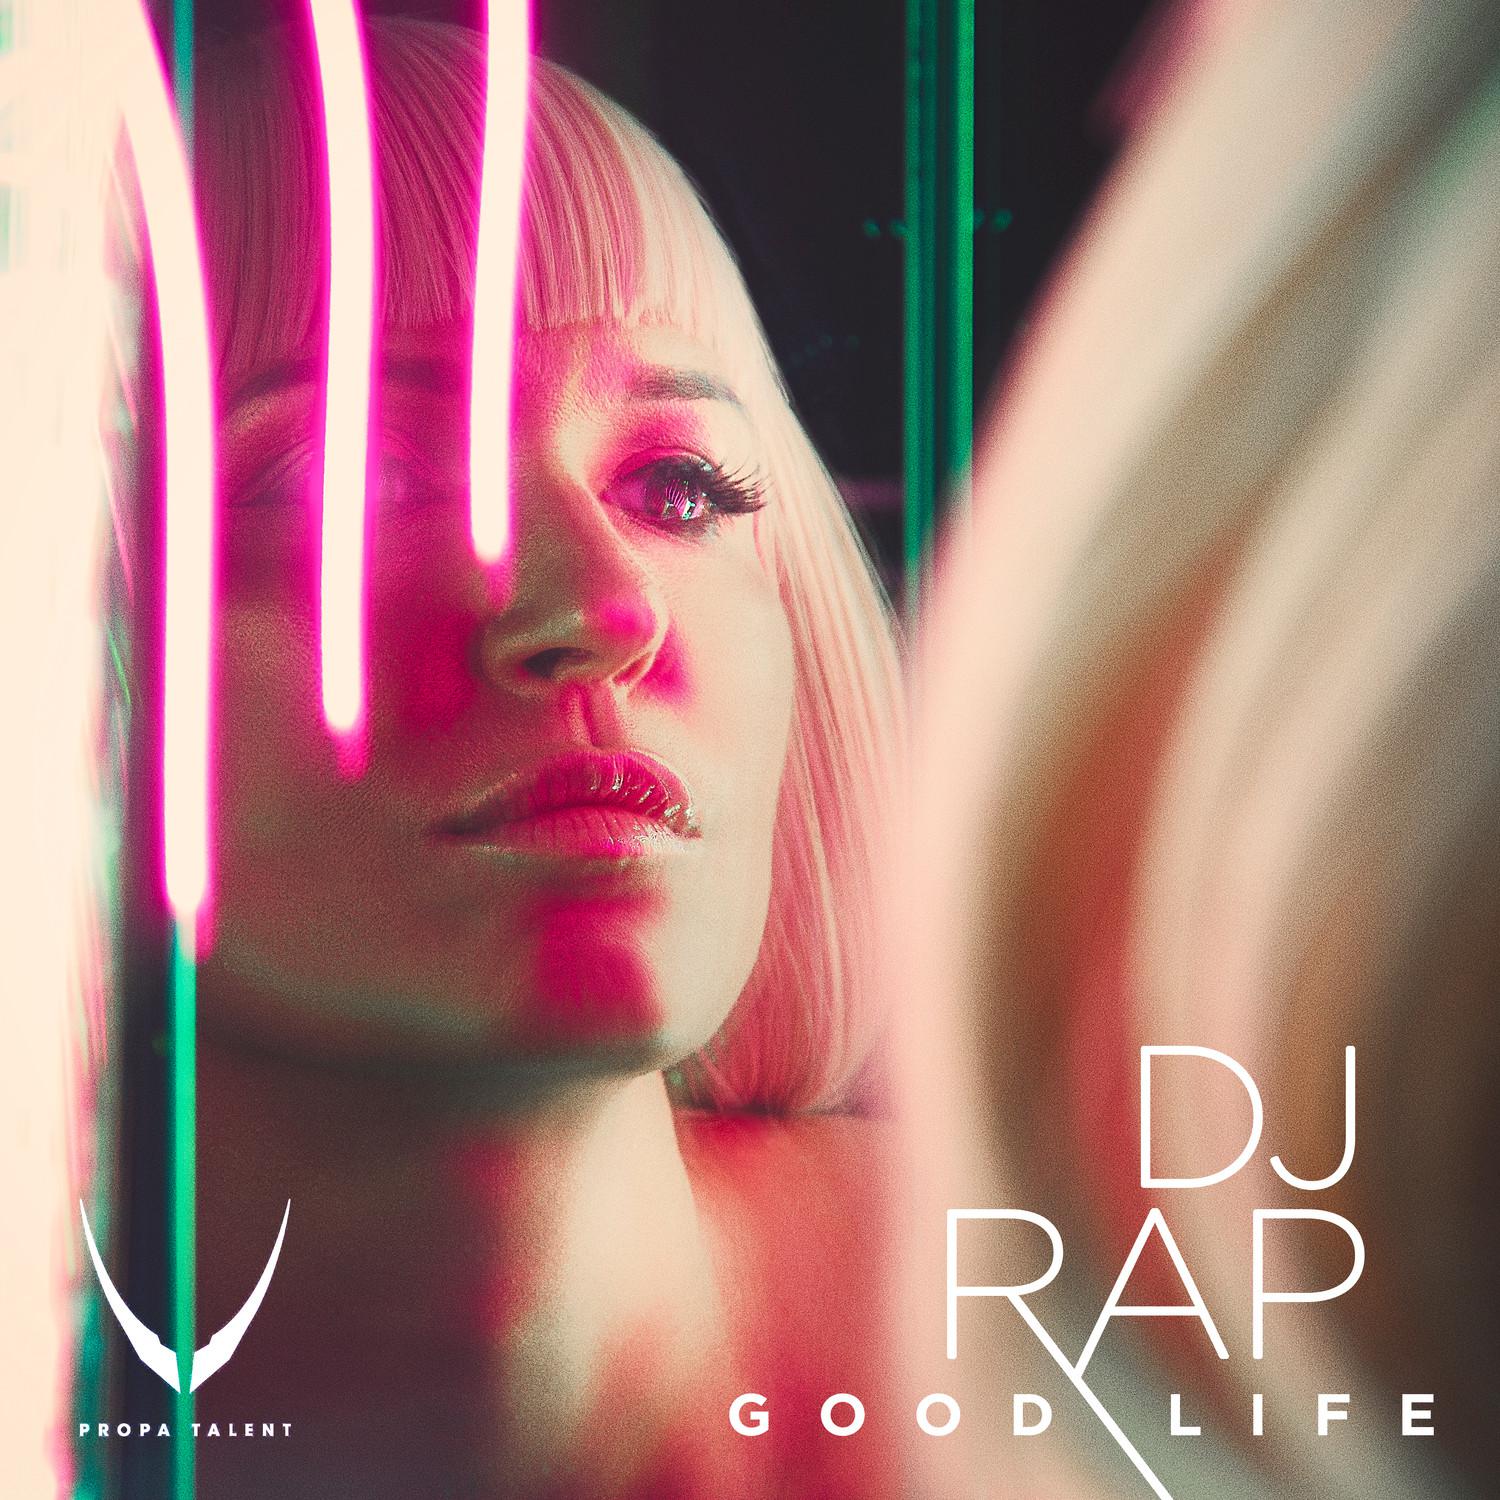 Good Life (DJ Rap Drum And Bass Remix)